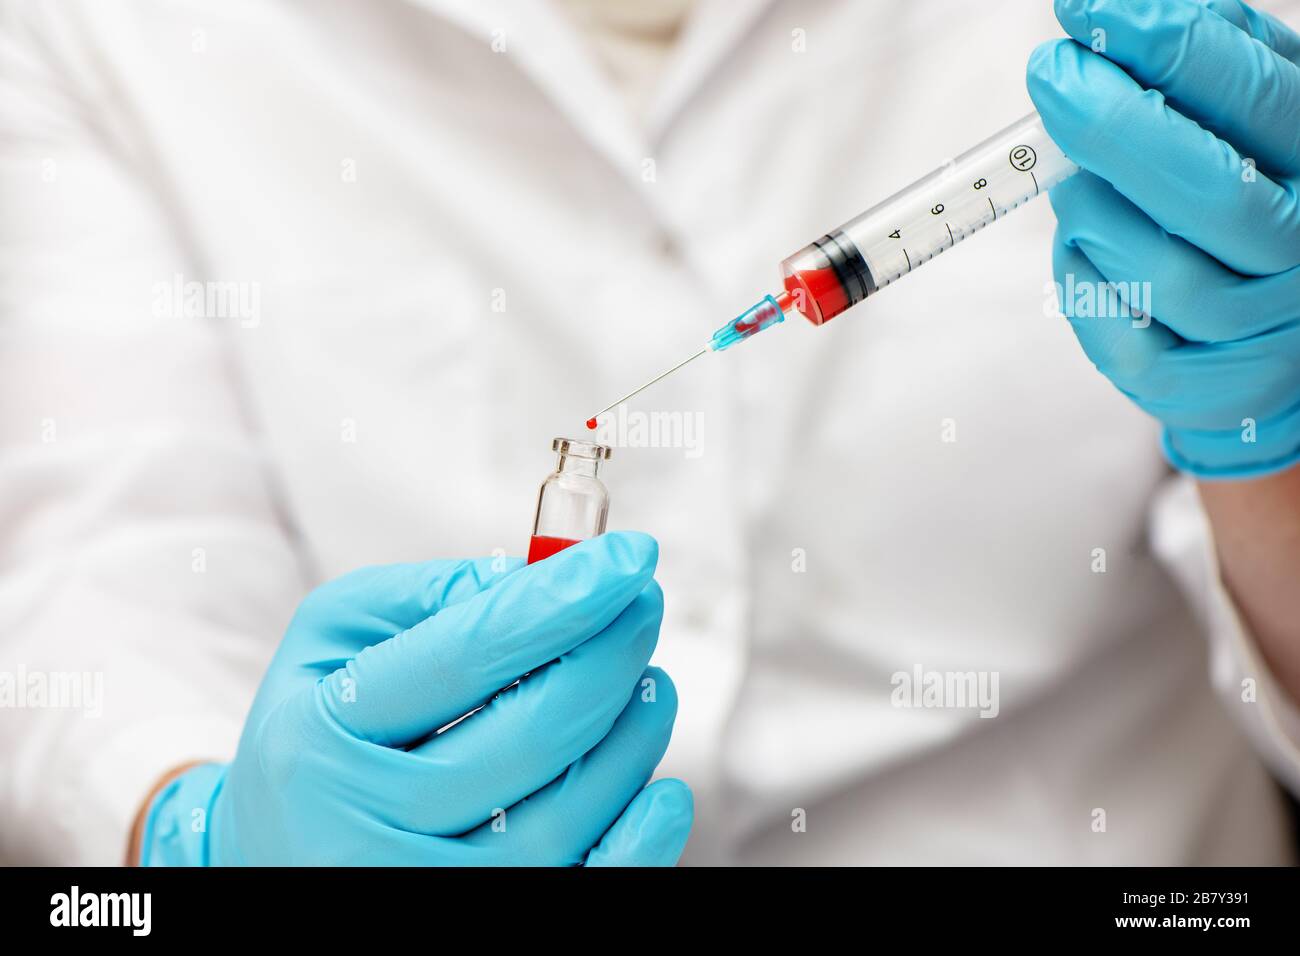 Medico nei guanti per uso medico che inietta il vaccino nella siringa. Concetto Coronavirus nCov 2019. Foto Stock